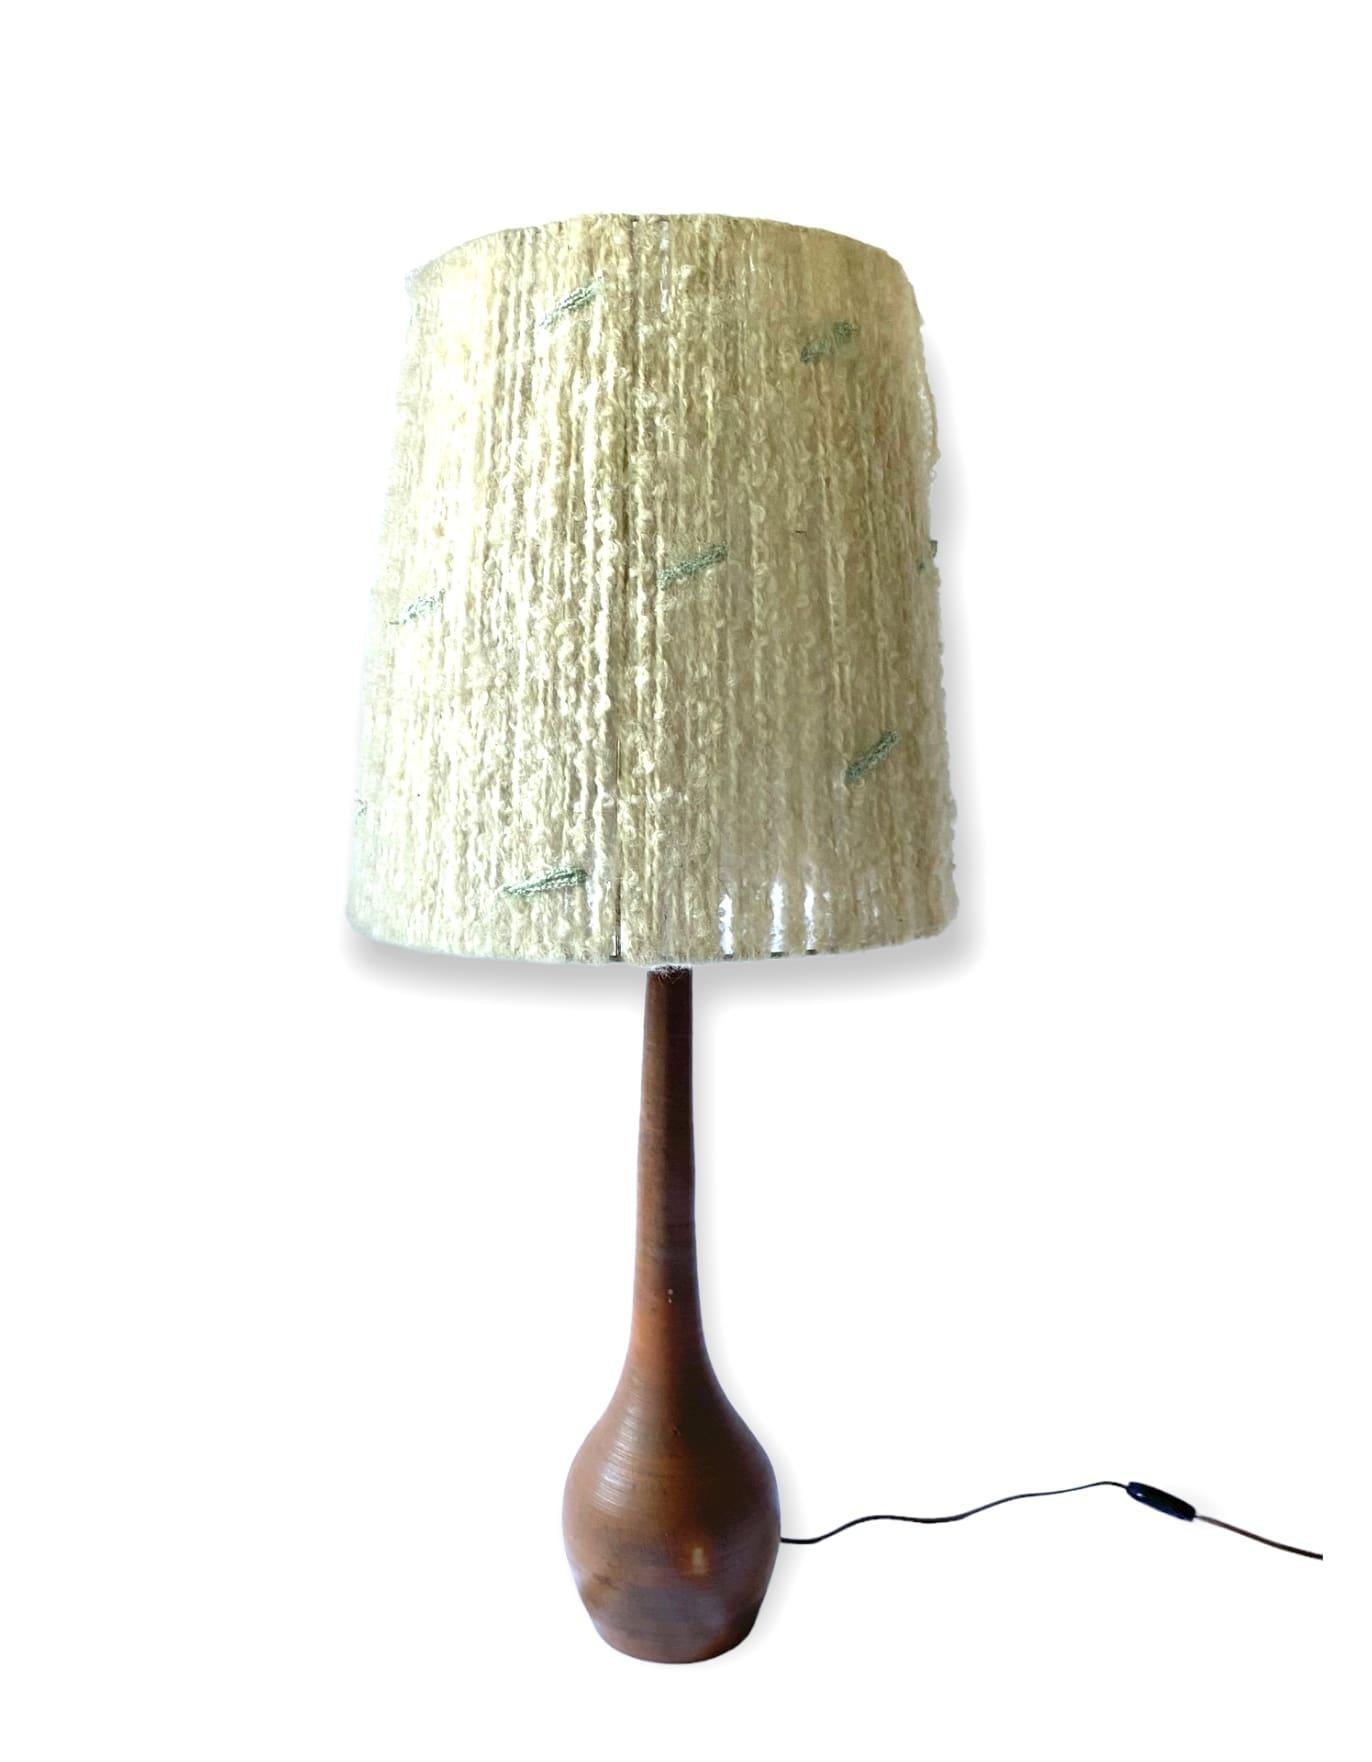 Midcentury Monumental Glazed Terracotta Table Lamp, France, 1950s For Sale 6